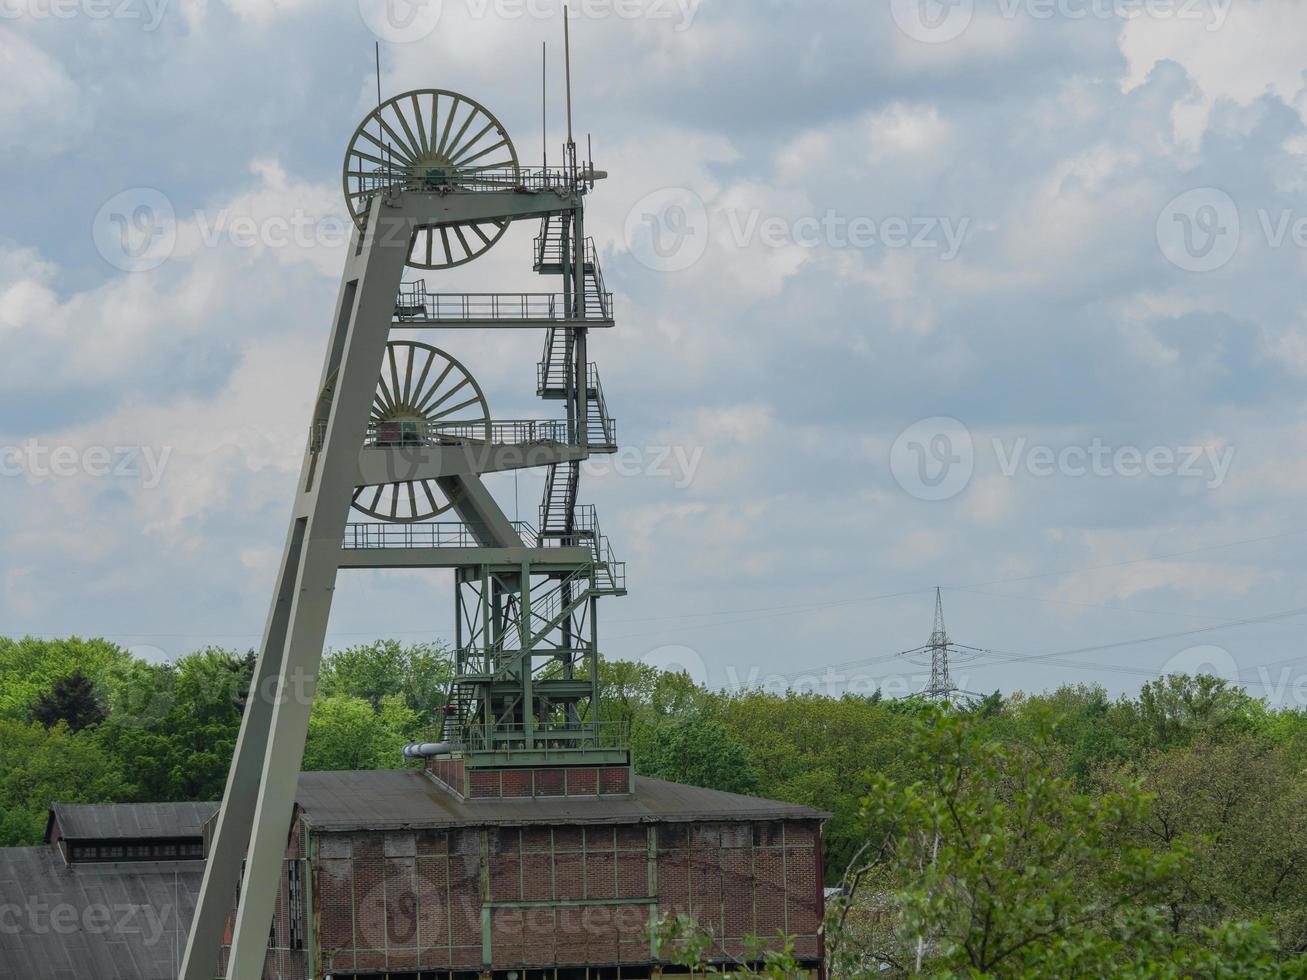 Ancienne mine de charbon dans la région de la Ruhr allemande photo